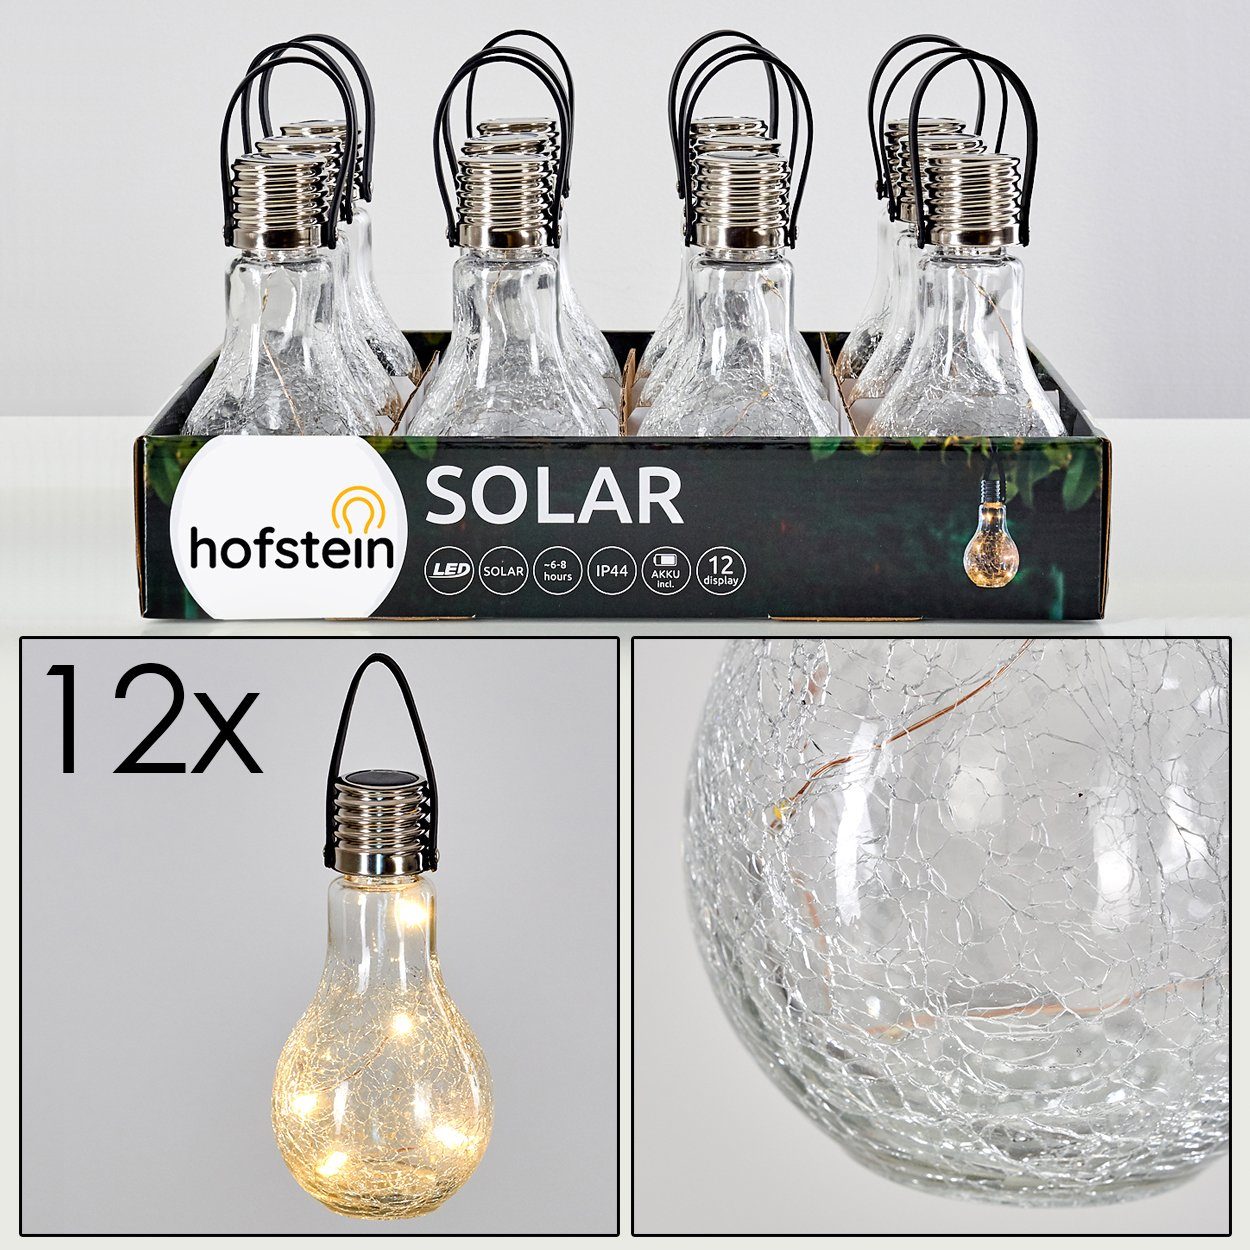 aus kein »Marta« hofstein LED nötig mit Solarleuchte Solarleuchte Echtglas, Stromanschluß Ein-/Ausschalter, Gartenlampe Solarpanel,